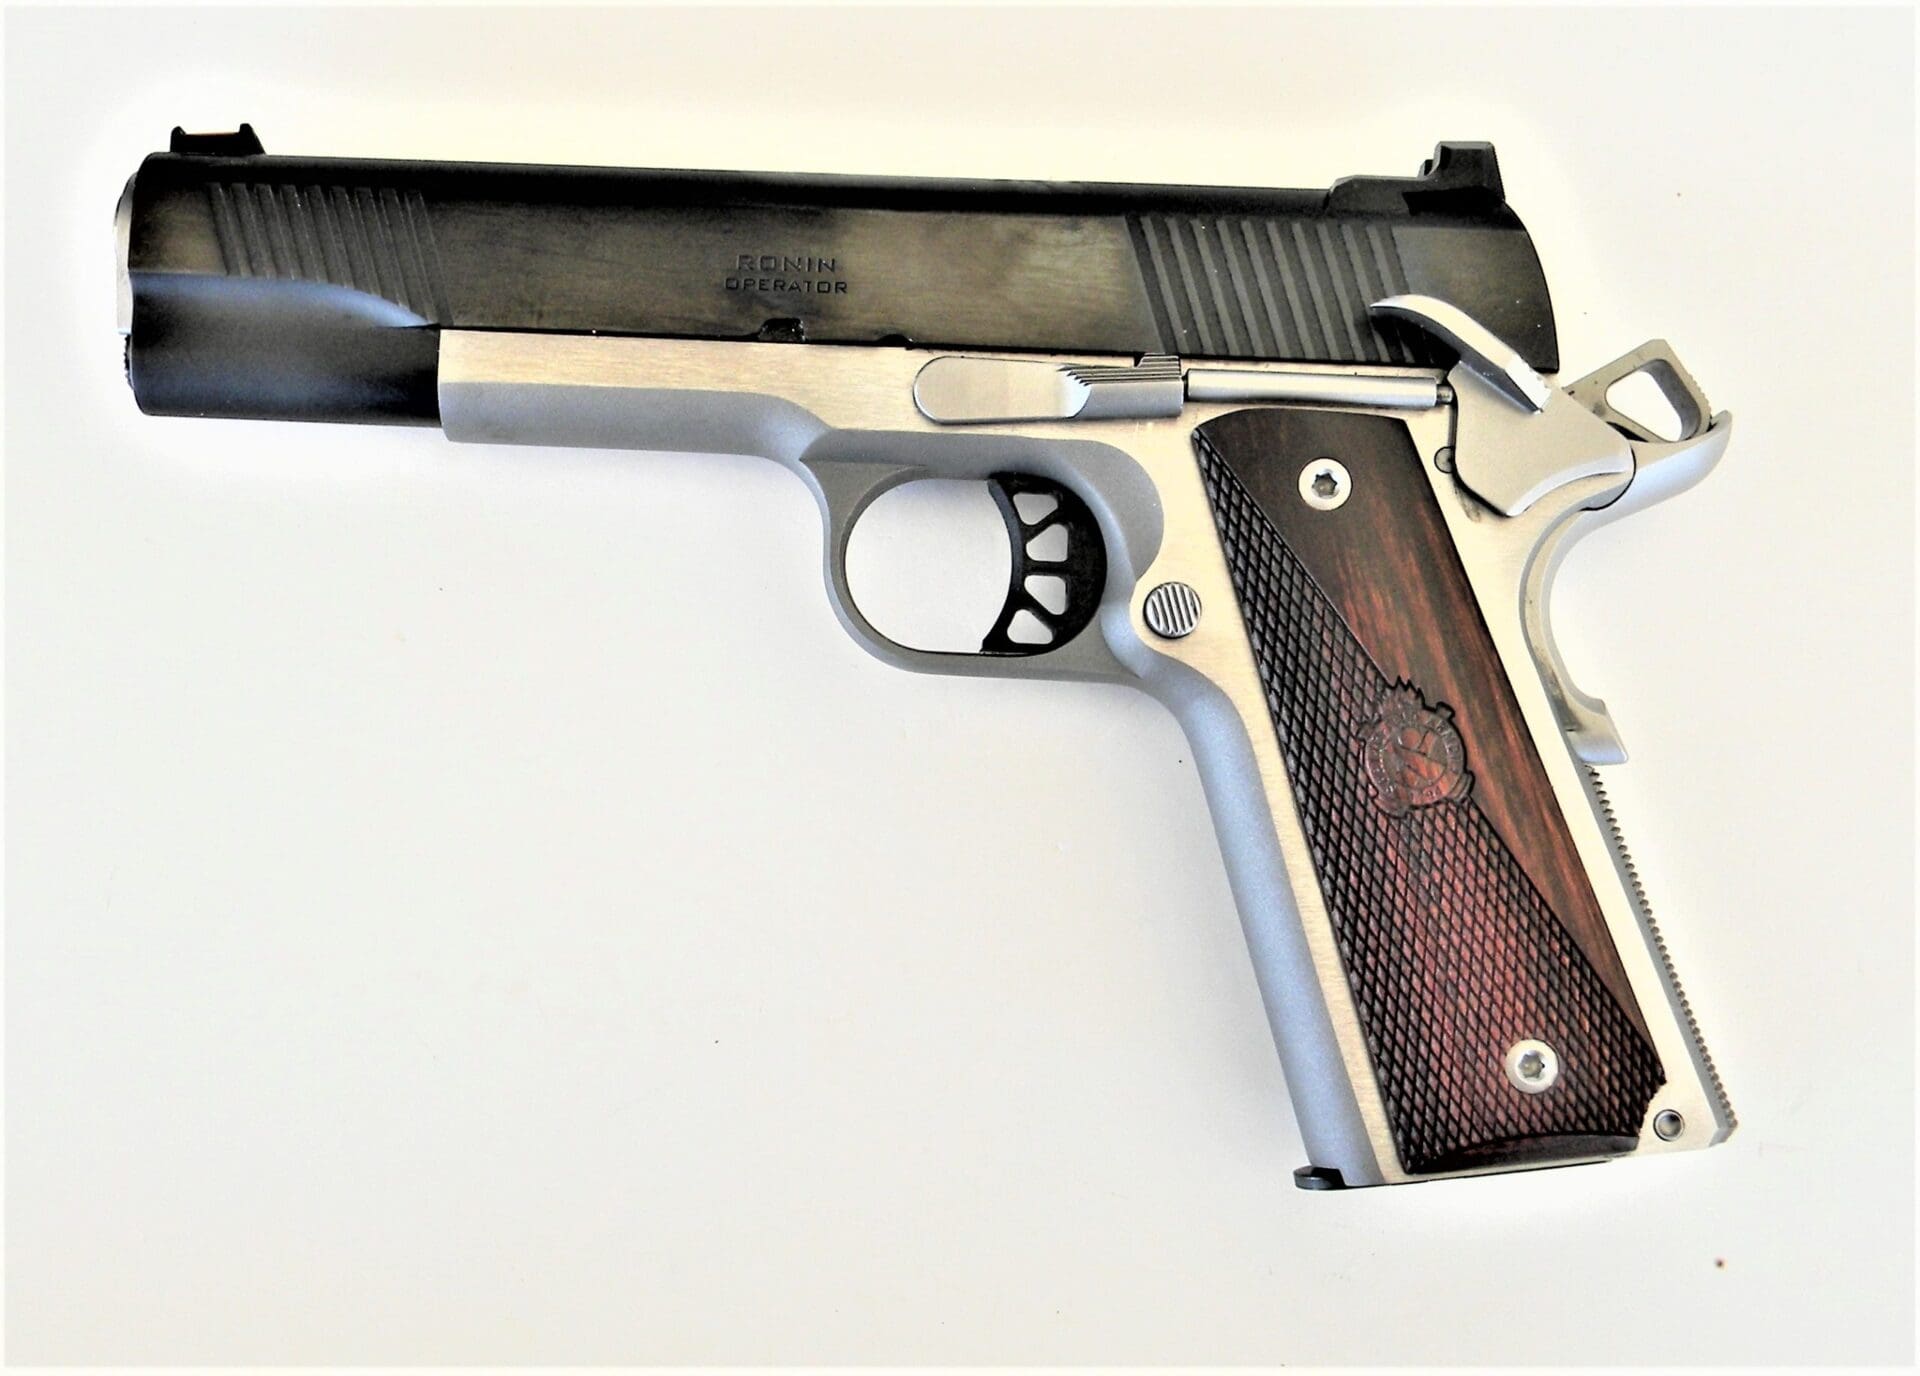 Springfield 1911 Ronin 9mm Pistol